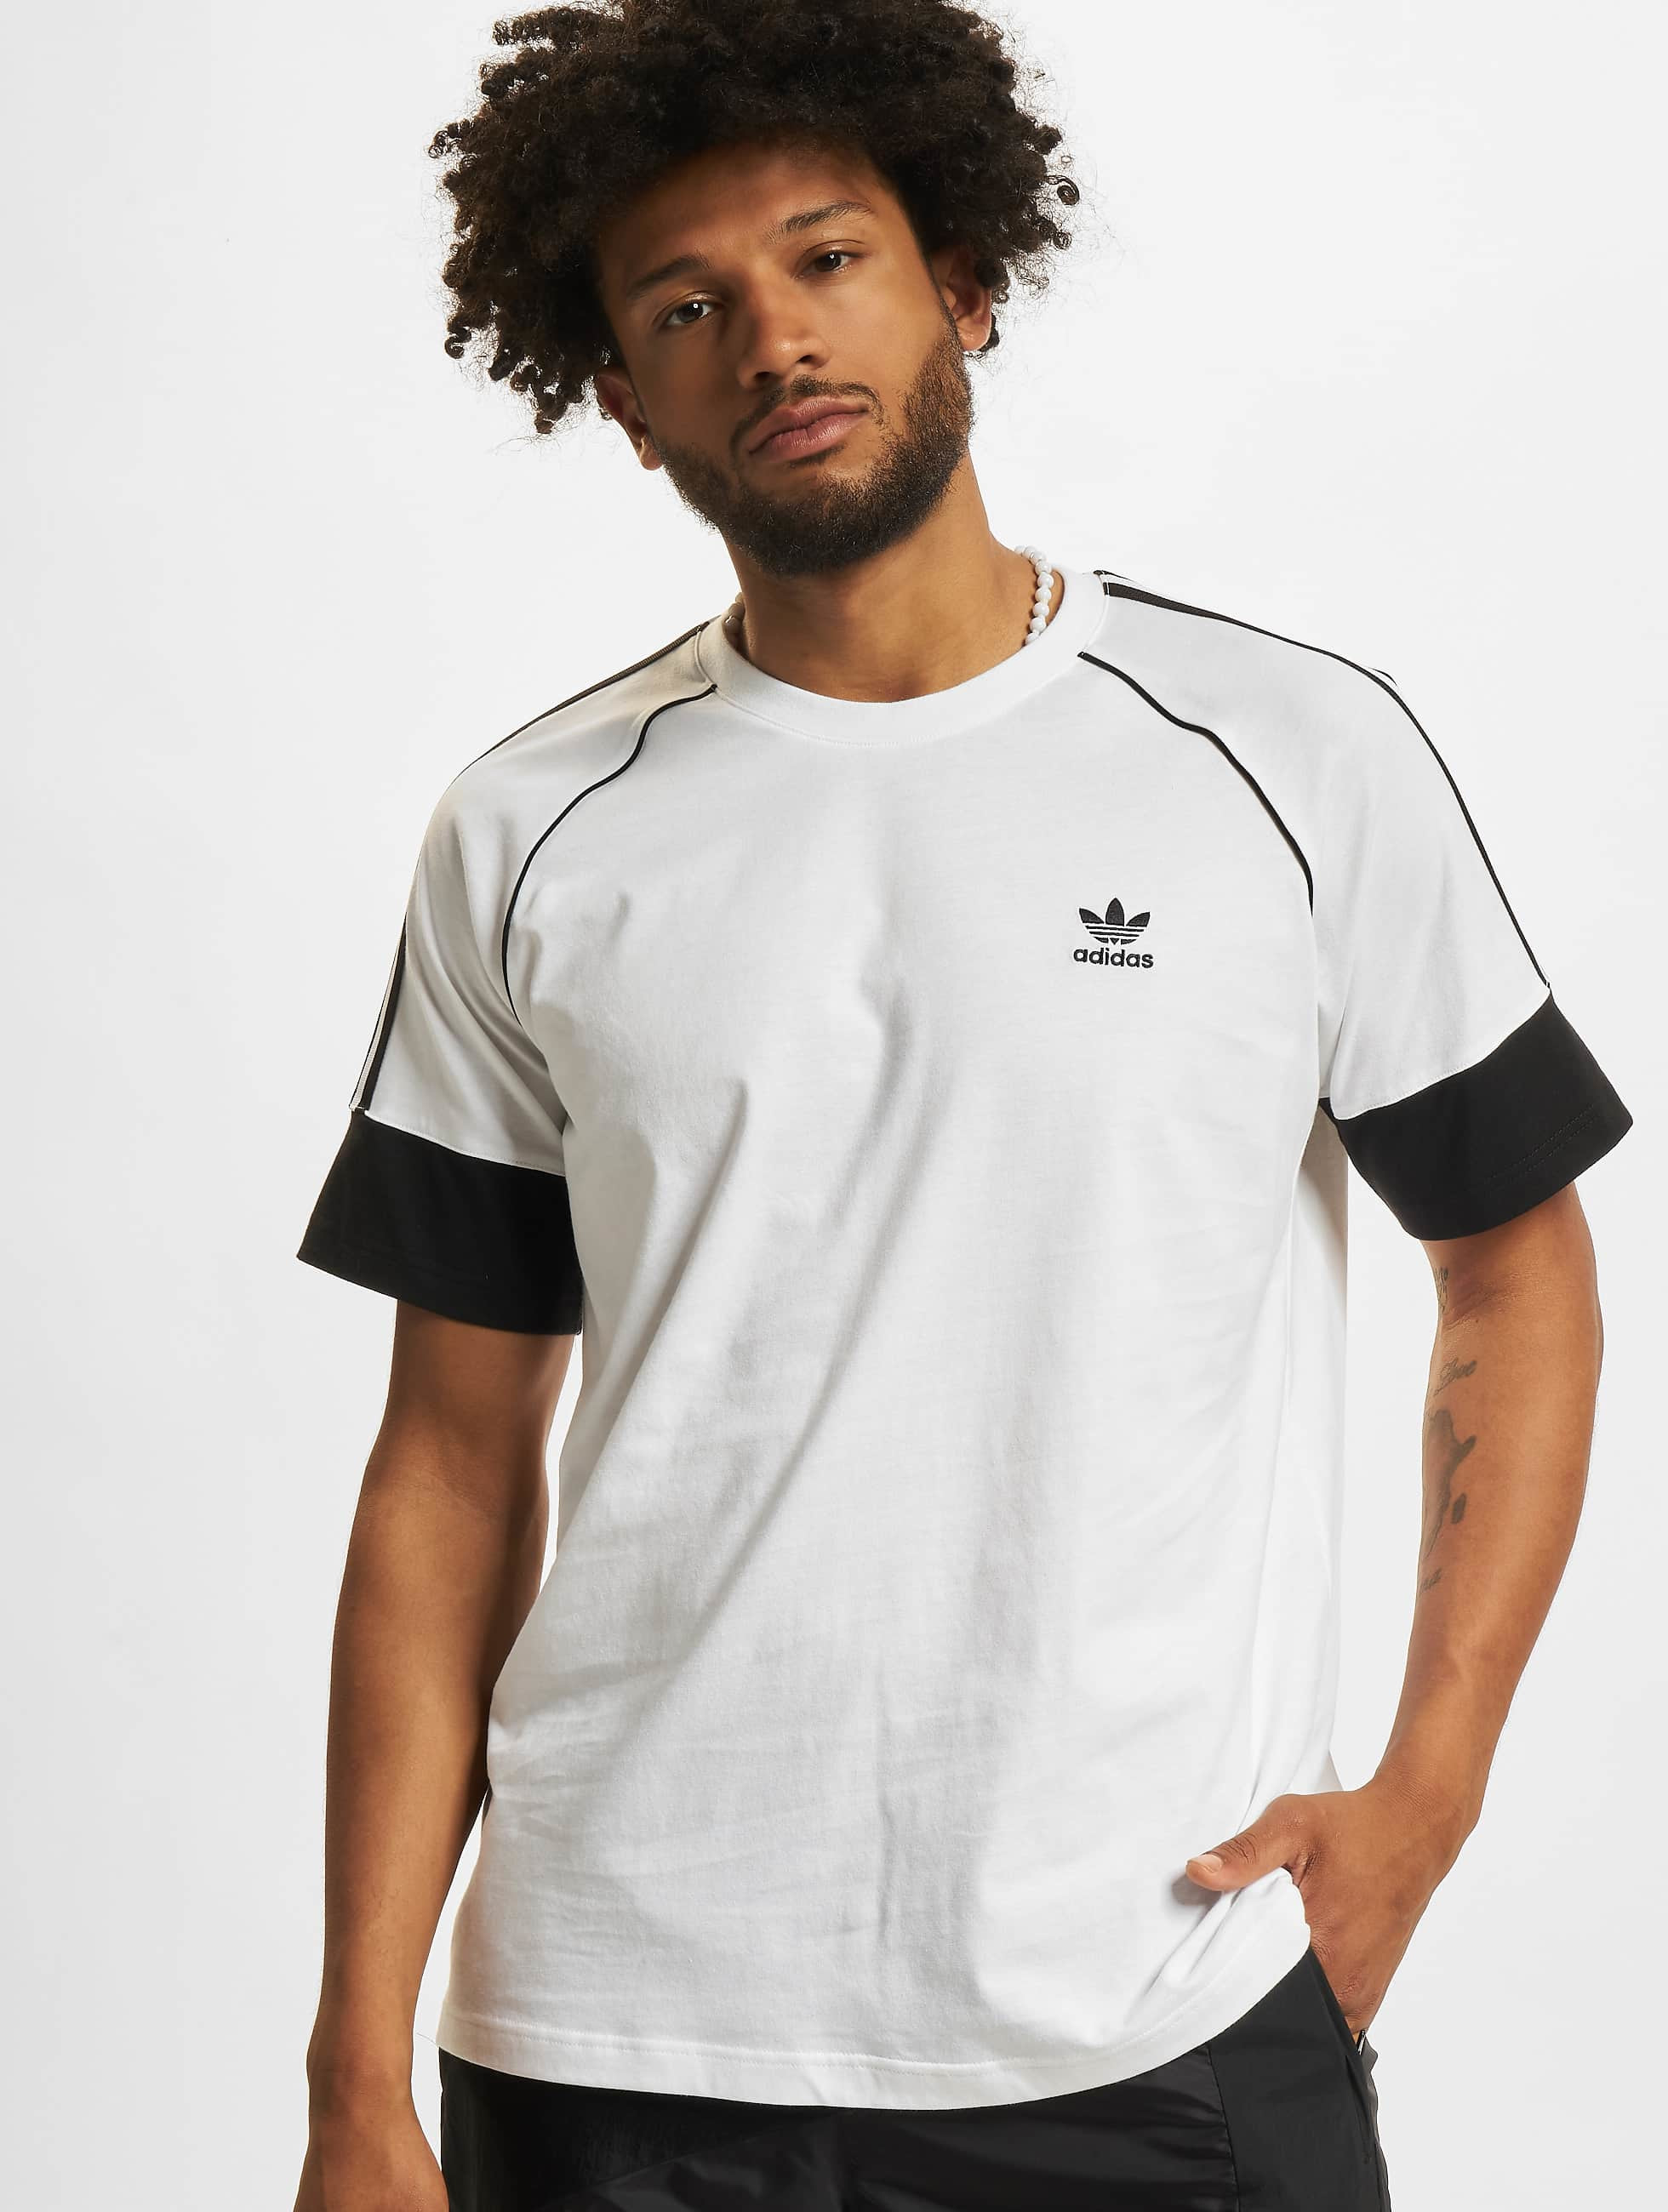 Ontmoedigen een vergoeding fee adidas Originals bovenstuk / t-shirt SST in wit 871837